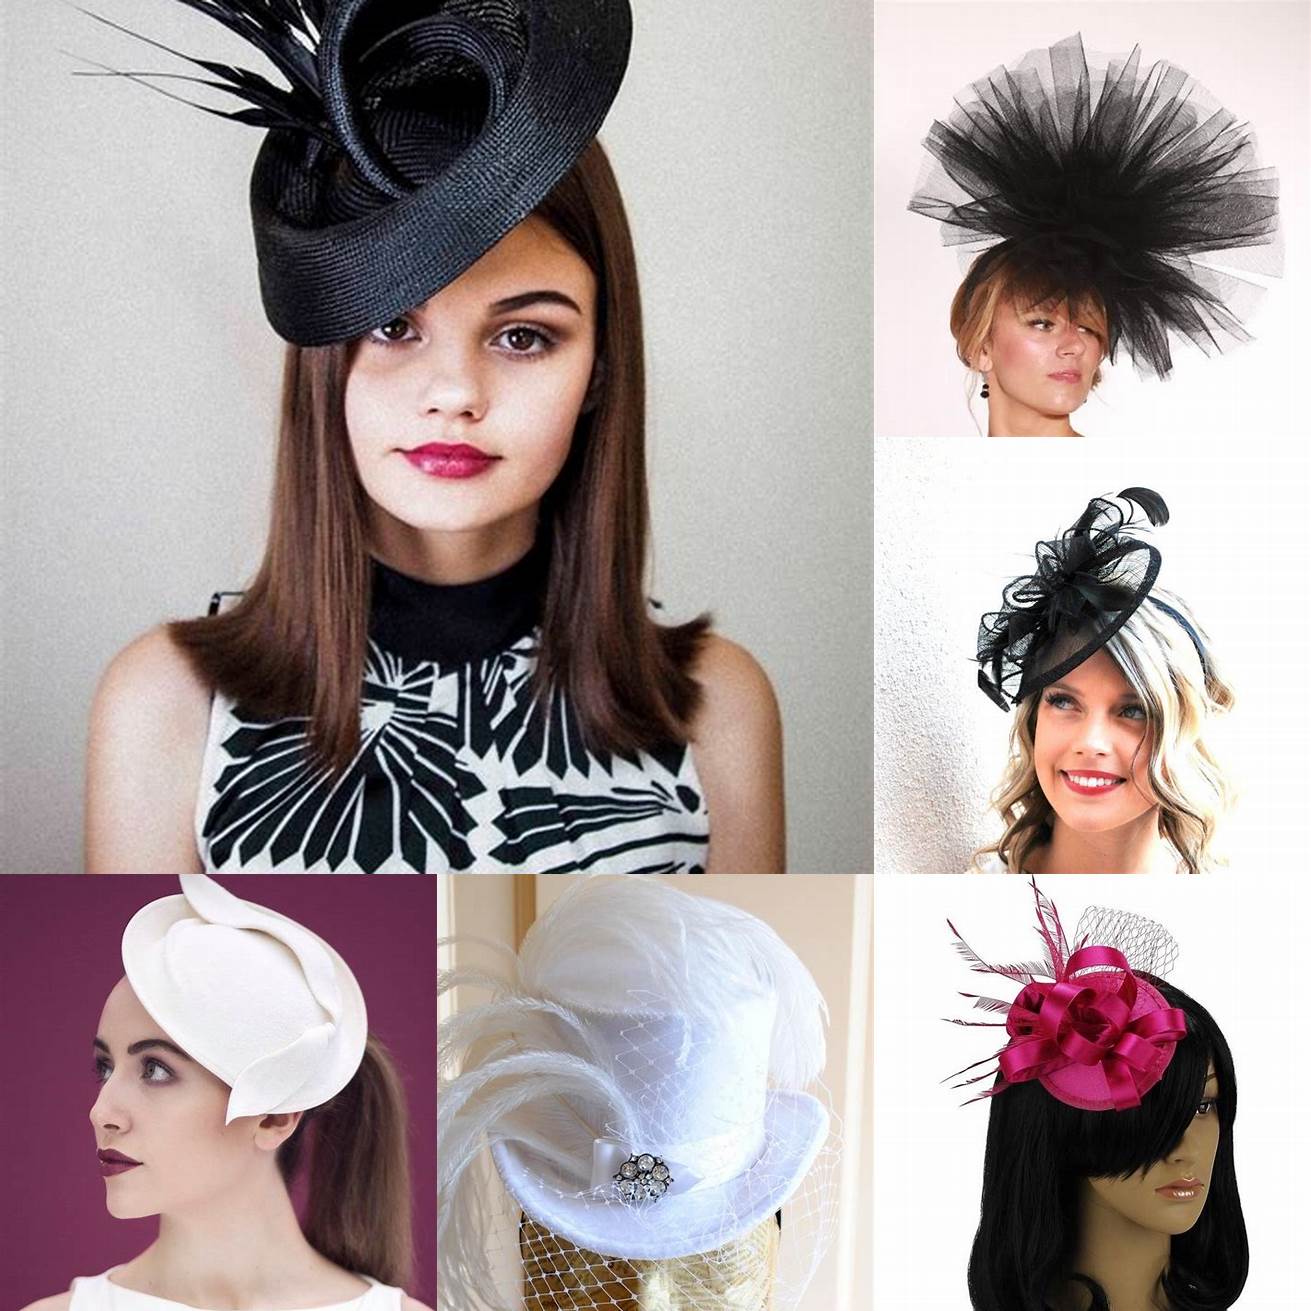 Chapeau ou fascinateur - Si vous recherchez un look plus sophistiqué vous pouvez opter pour un chapeau ou un fascinateur Les chapeaux sont disponibles dans une variété de styles allant dun chapeau simple à un chapeau orné de plumes et de bijoux Les fascinateurs sont de petits ornements de tête qui sont fixés à un peigne ou à une bande de cheveux